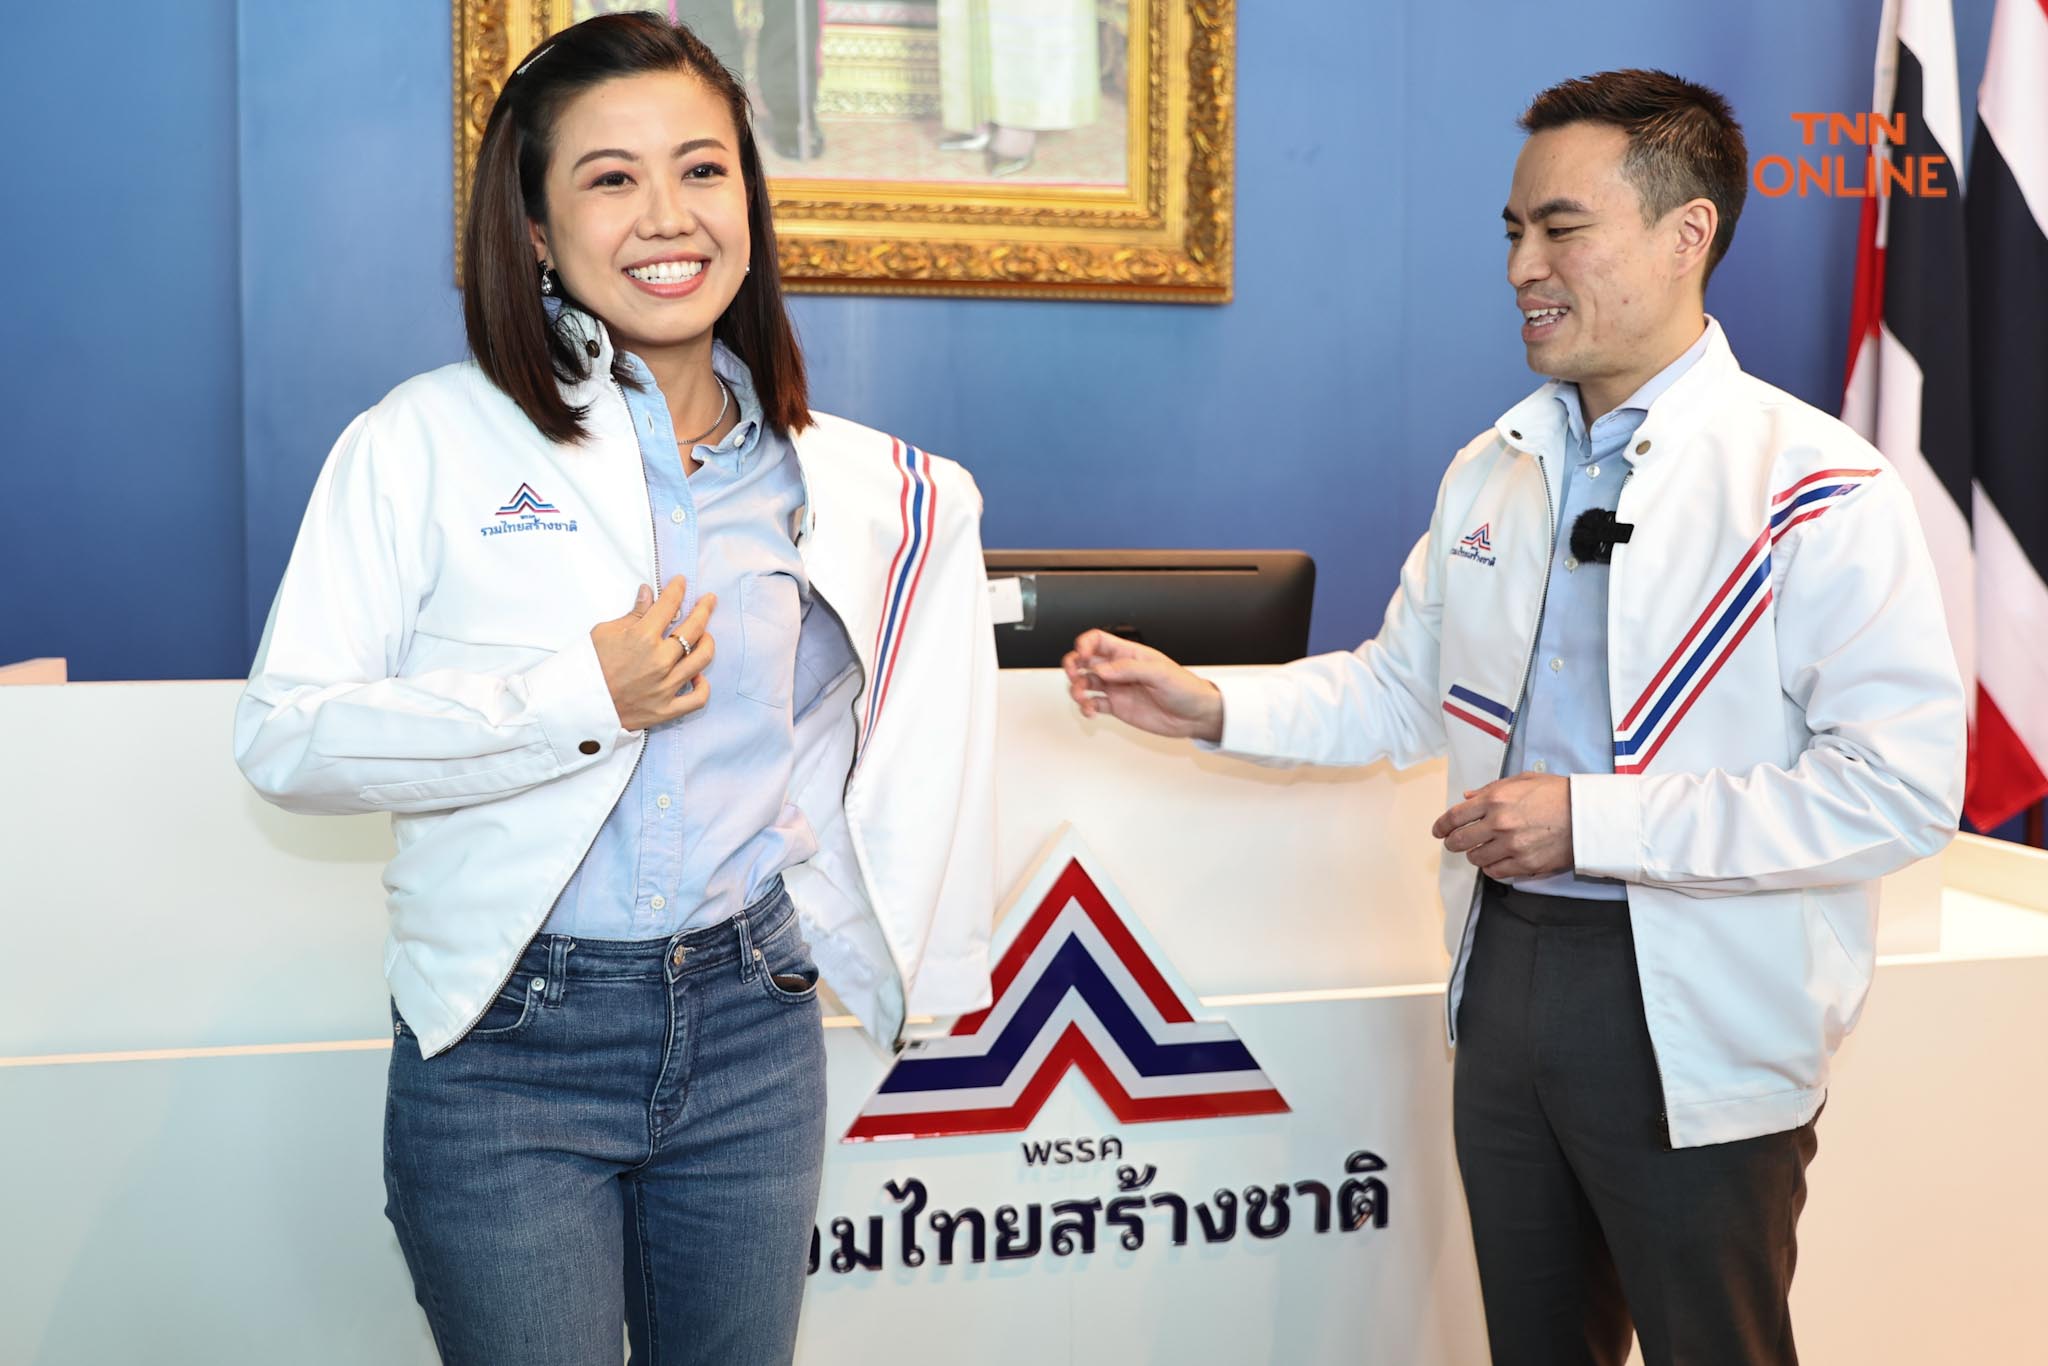 ทิพานัน สมัครรวมไทยสร้างชาติ พร้อมทำงานก่อนเปิดทีมงานคนรุ่นใหม่